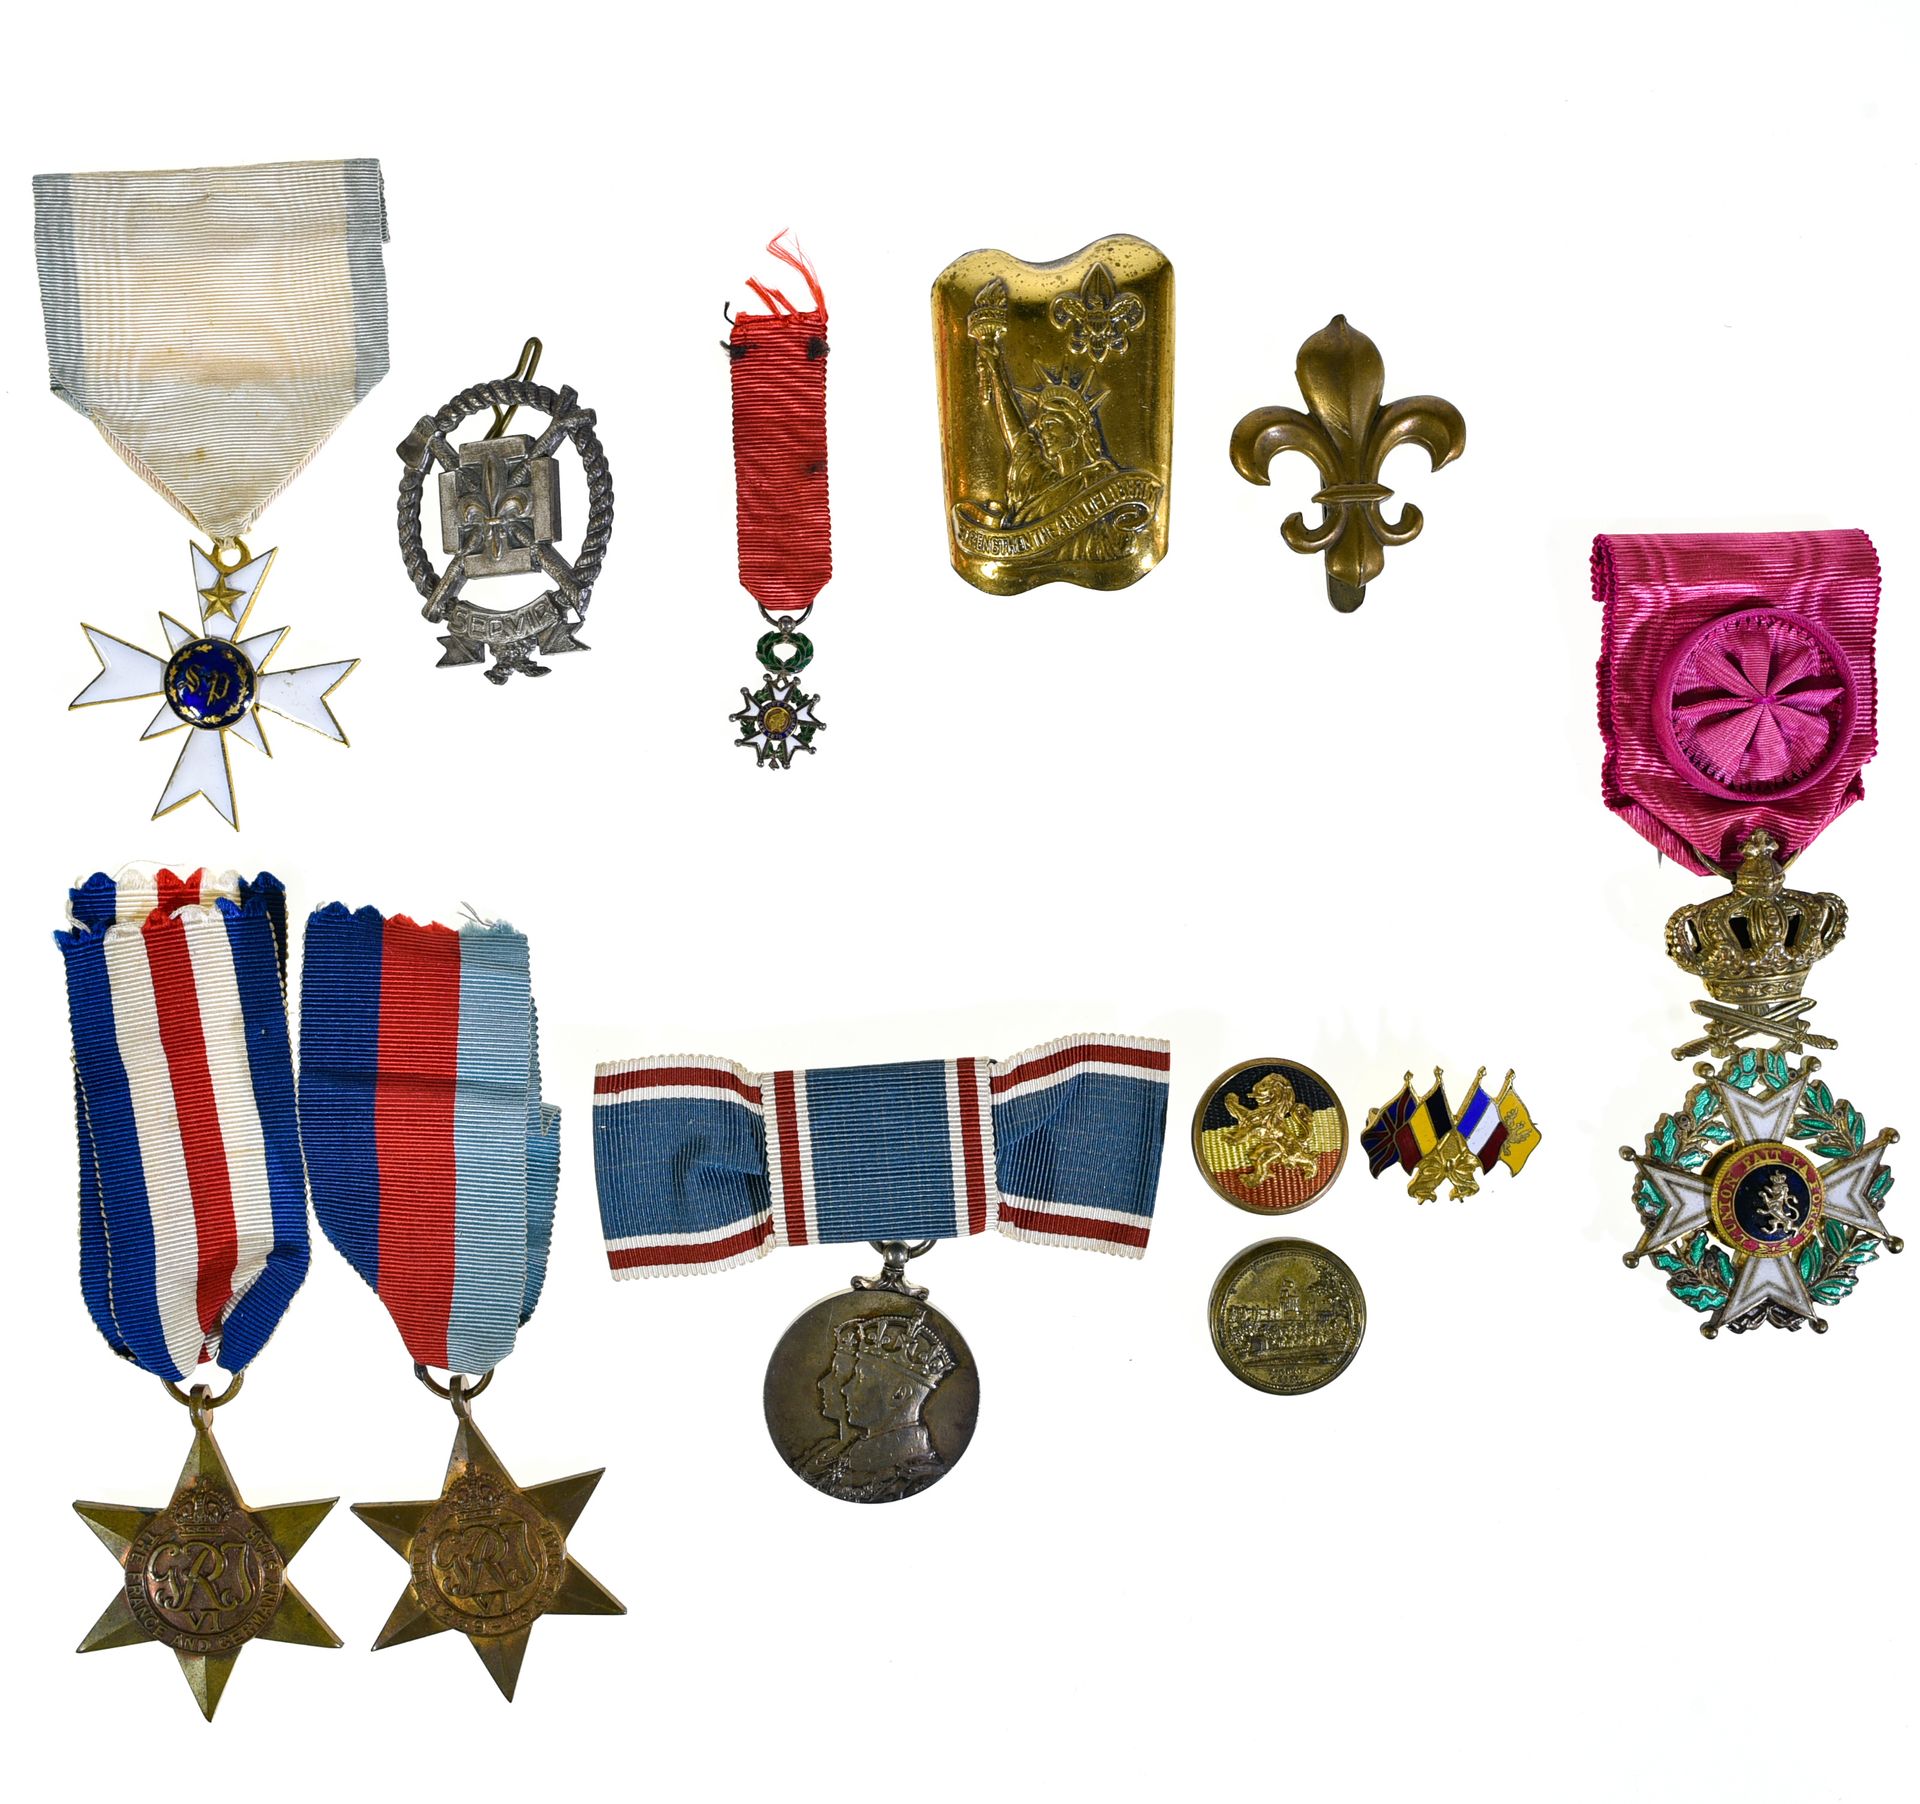 Lot de décorations, insignes et curiosités 大量的装饰品、徽章和奇珍异宝



勋章：比利时利奥波德勋章，带有军衔的军&hellip;